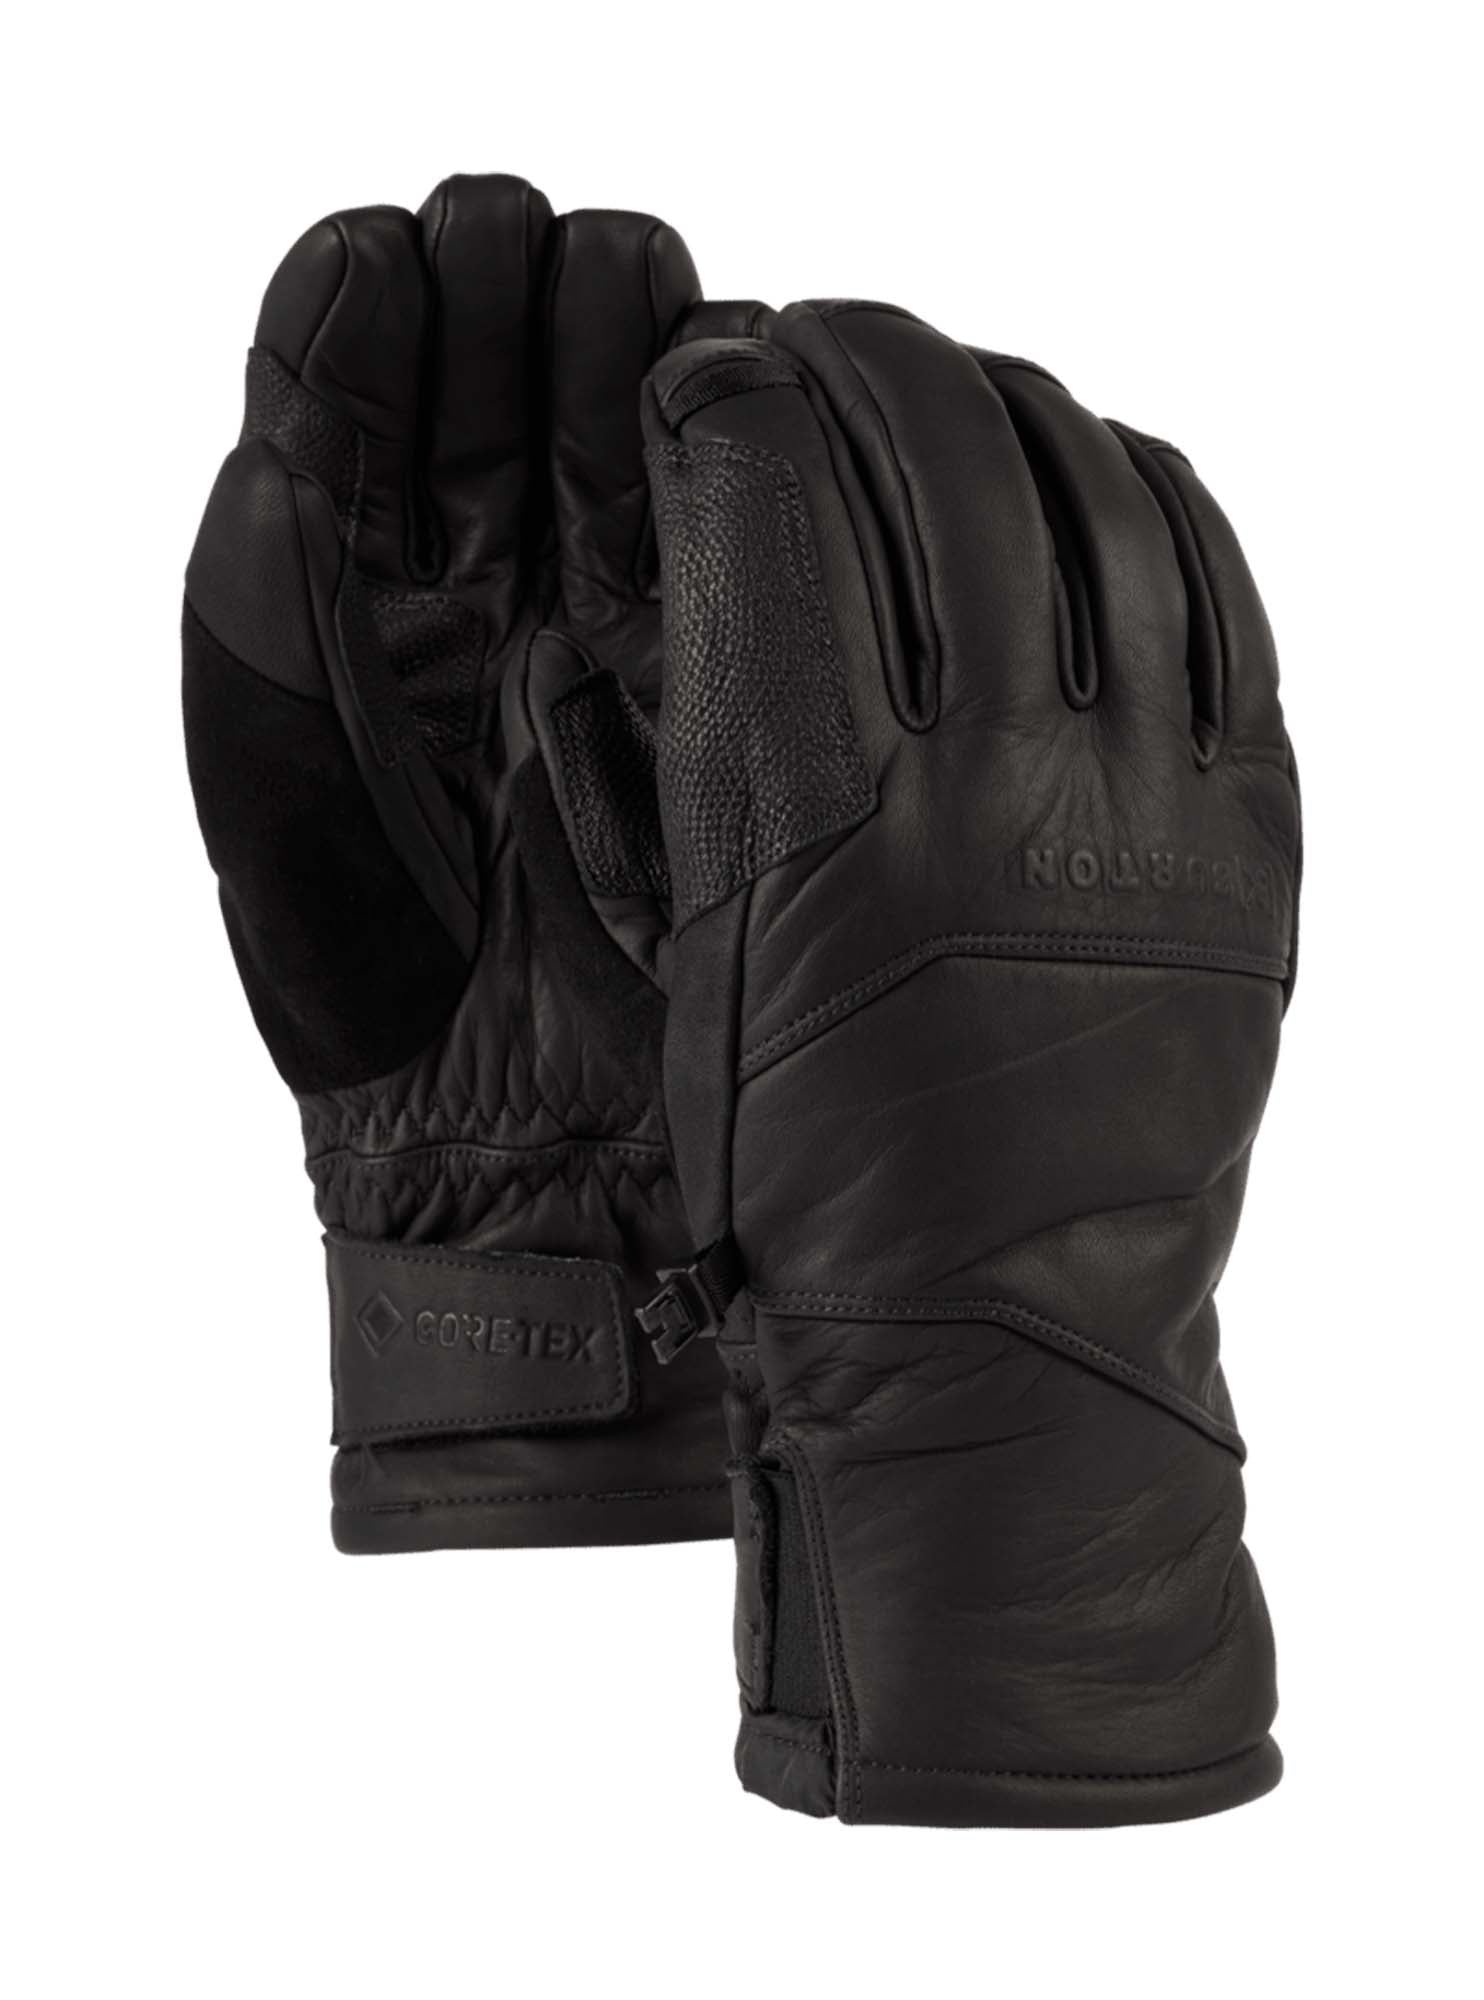 Skórzane rękawice [ak] Clutch GORE-TEX Leather